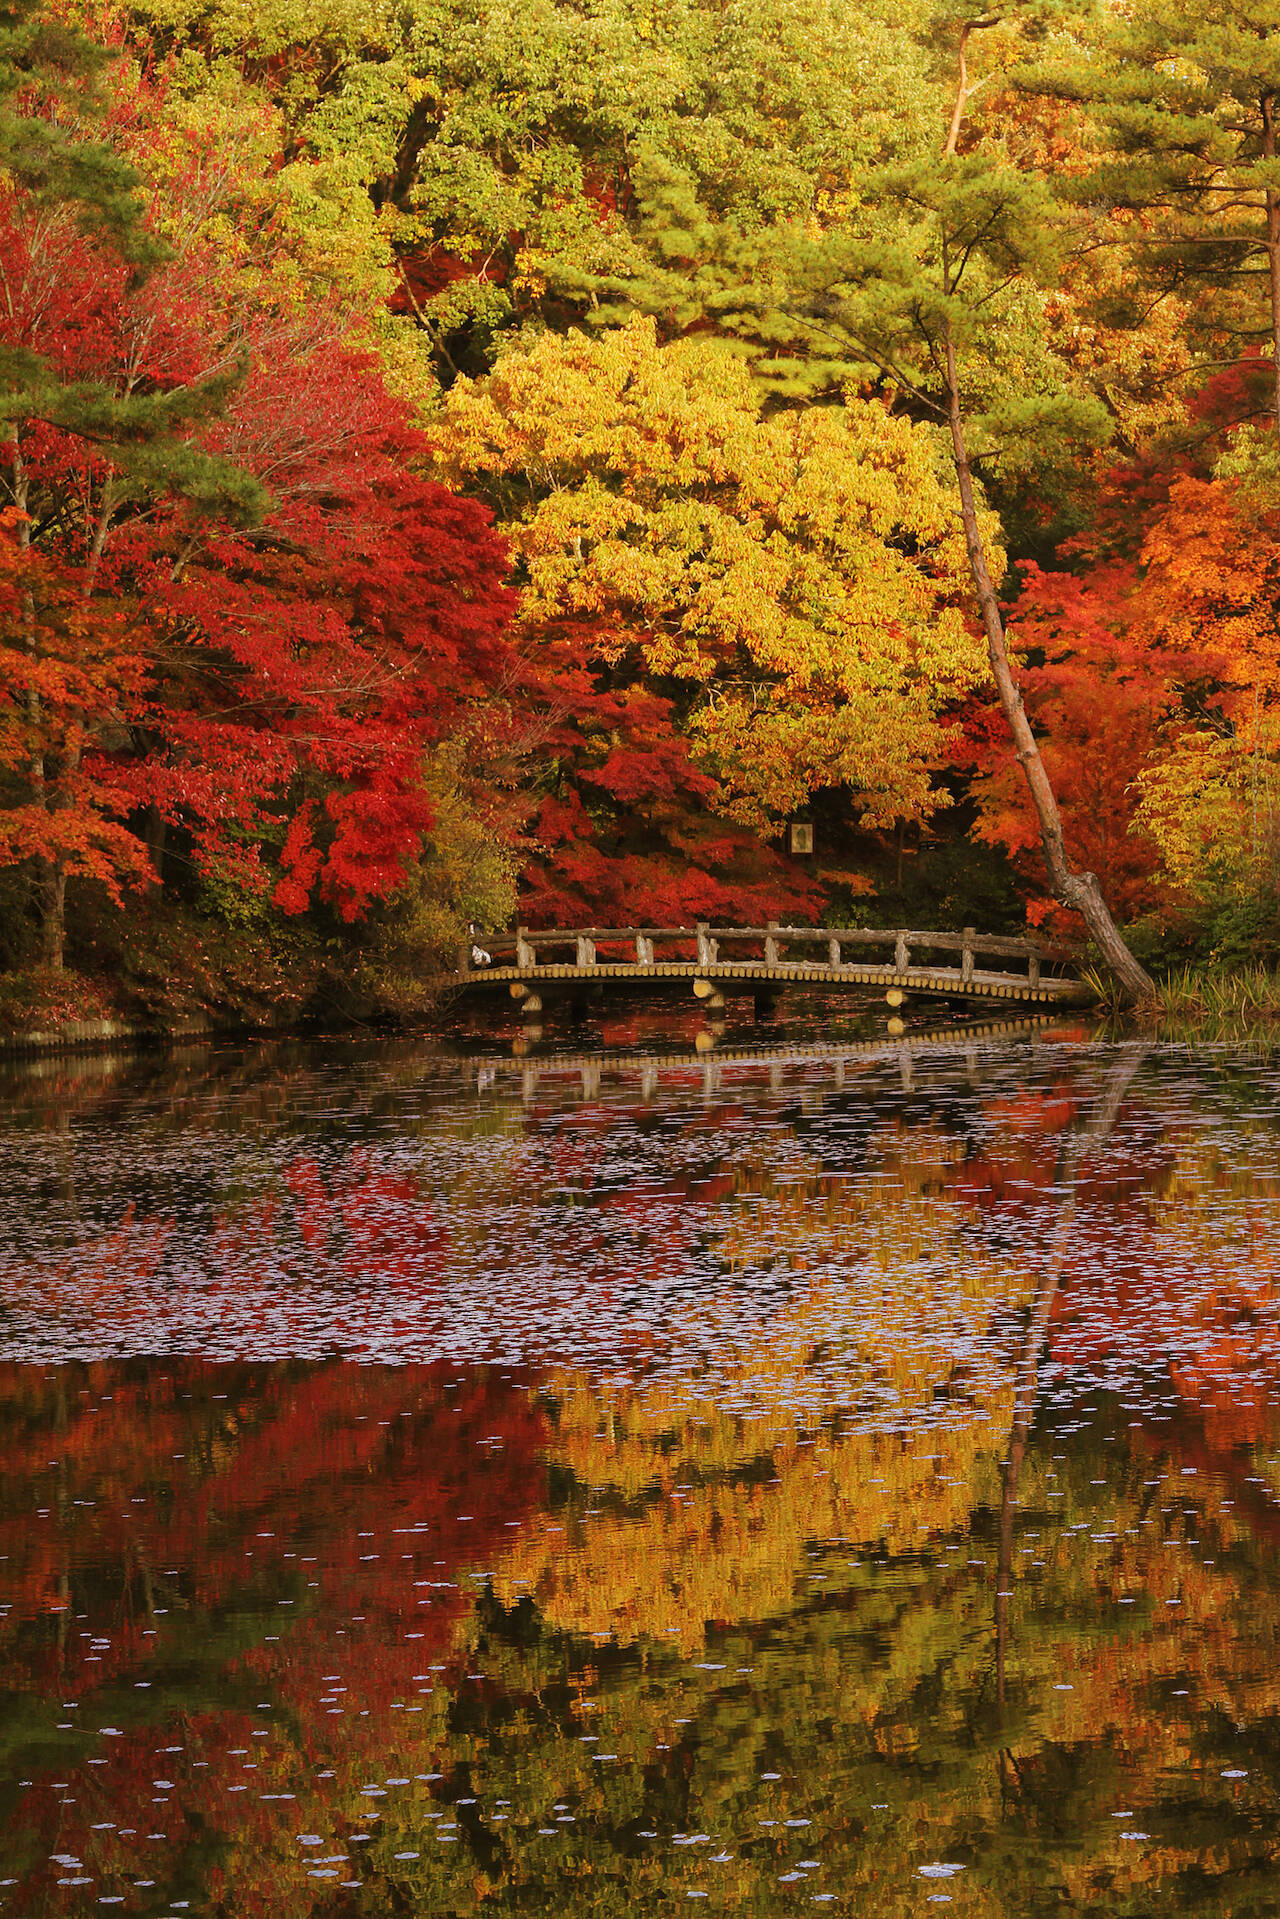 【全国紅葉の絶景】一幅の絵画のような、兵庫県の紅葉人気スポット